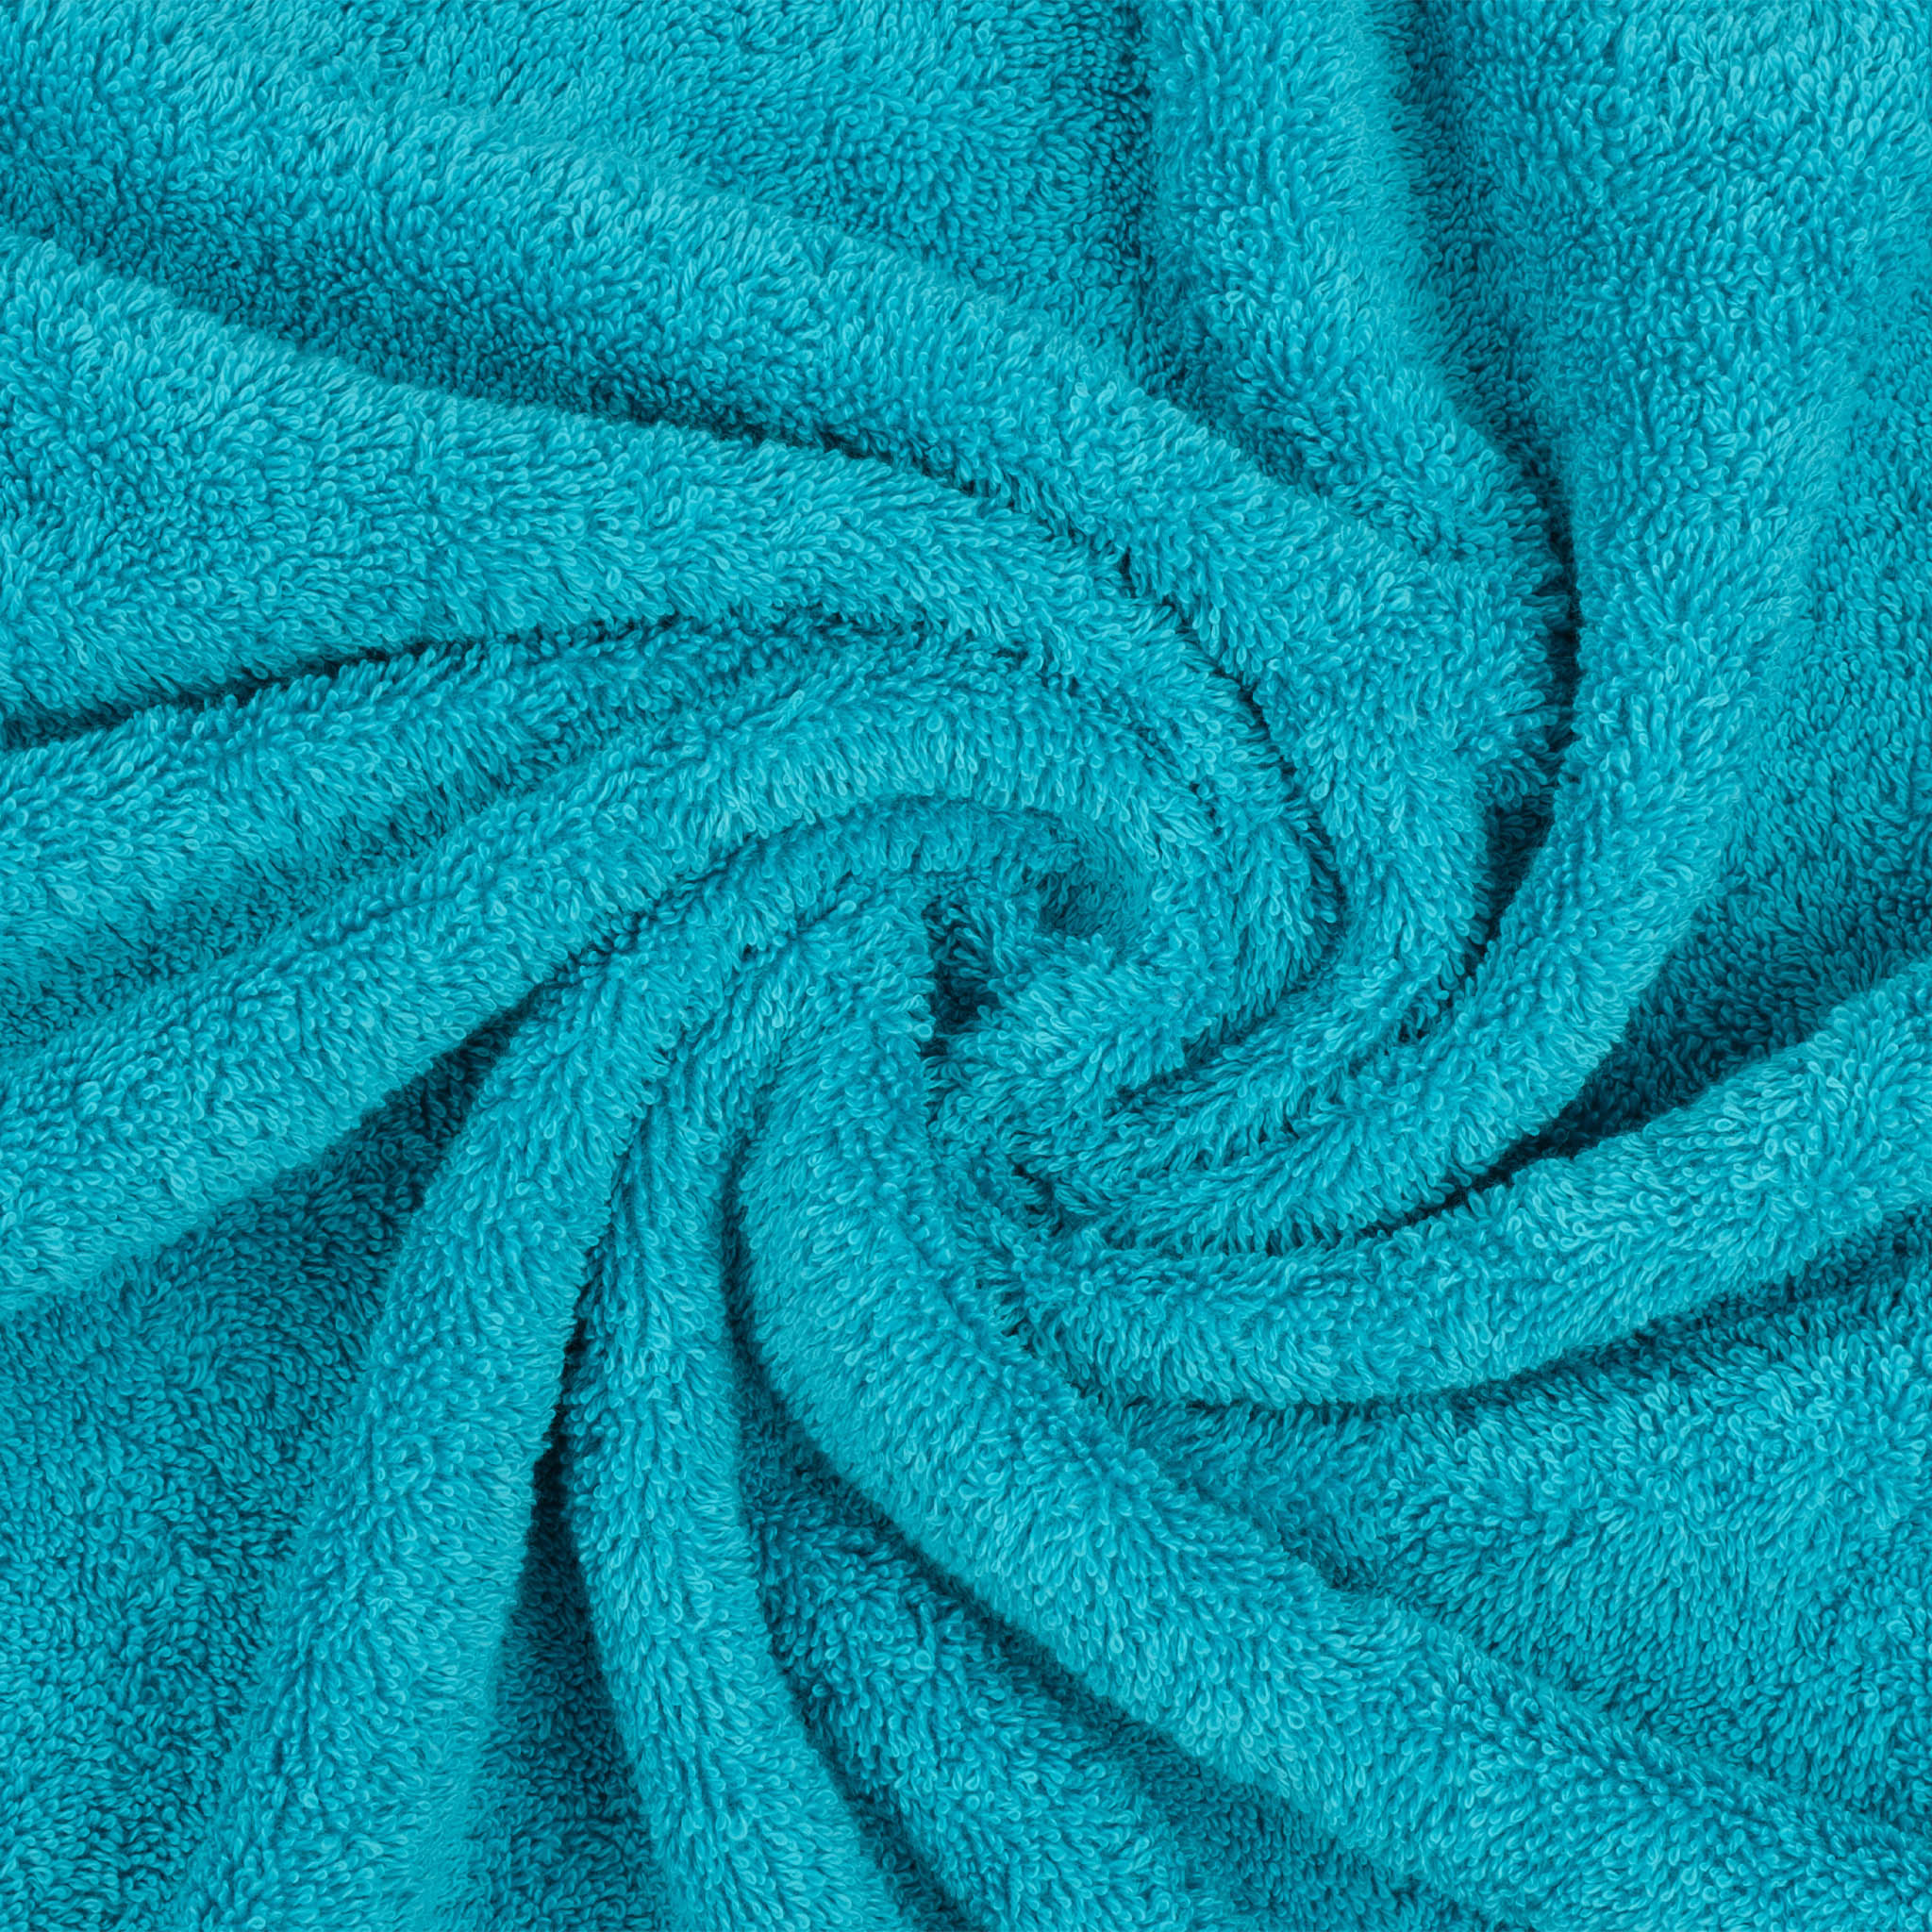 American Soft Linen 100% Turkish Cotton 6 Piece Towel Set Wholesale aqua-blue-7